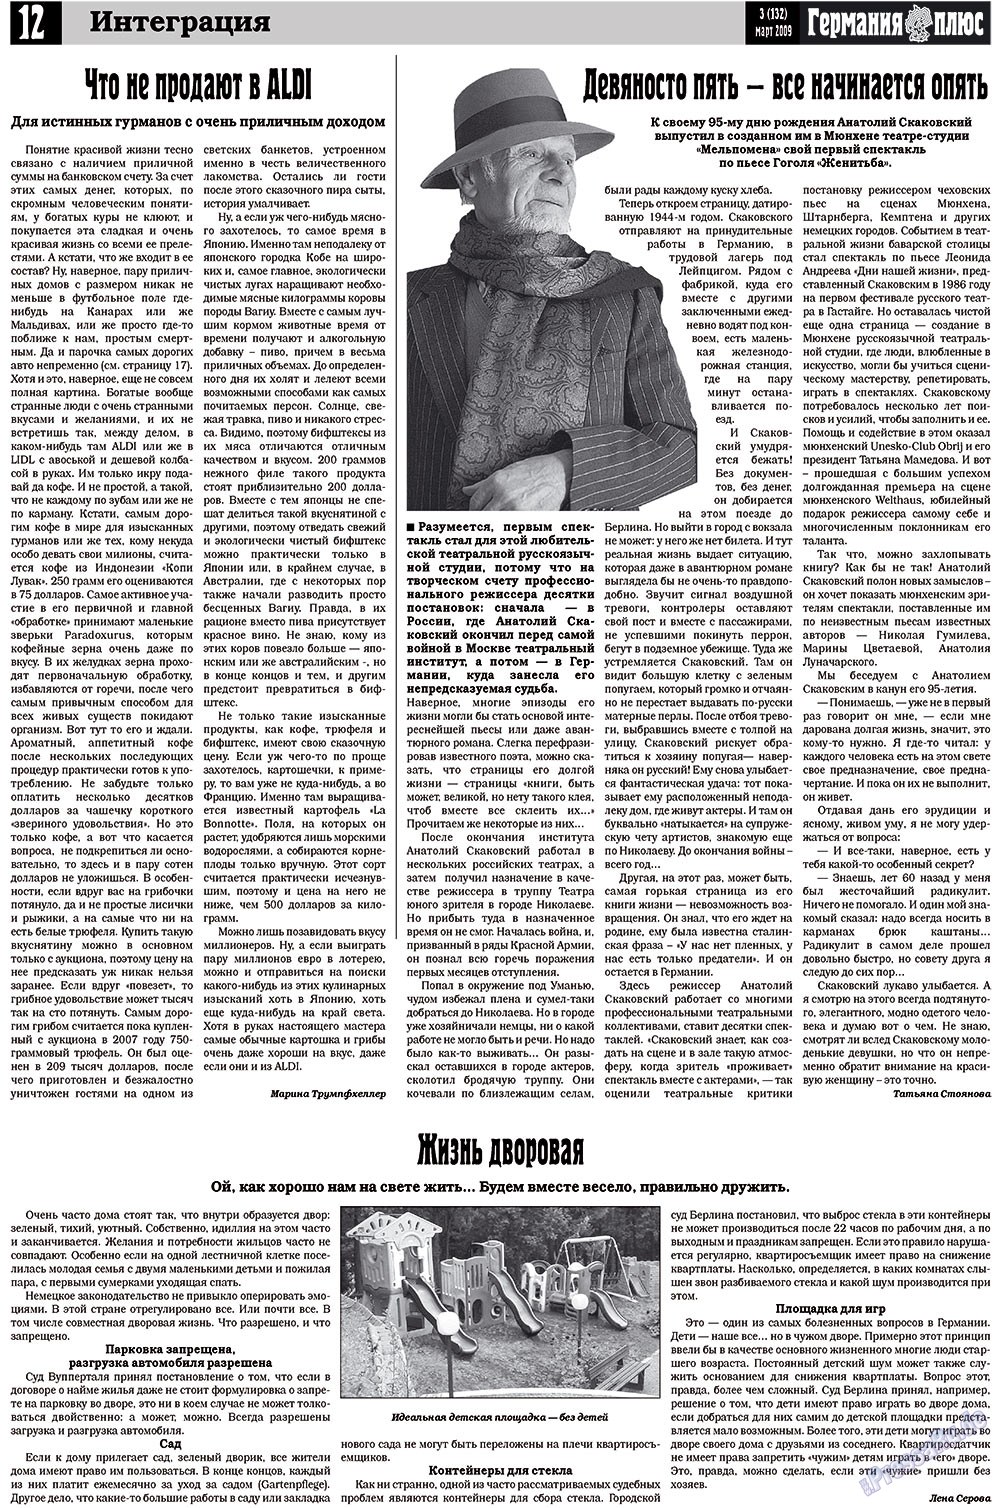 Германия плюс (газета). 2009 год, номер 3, стр. 16